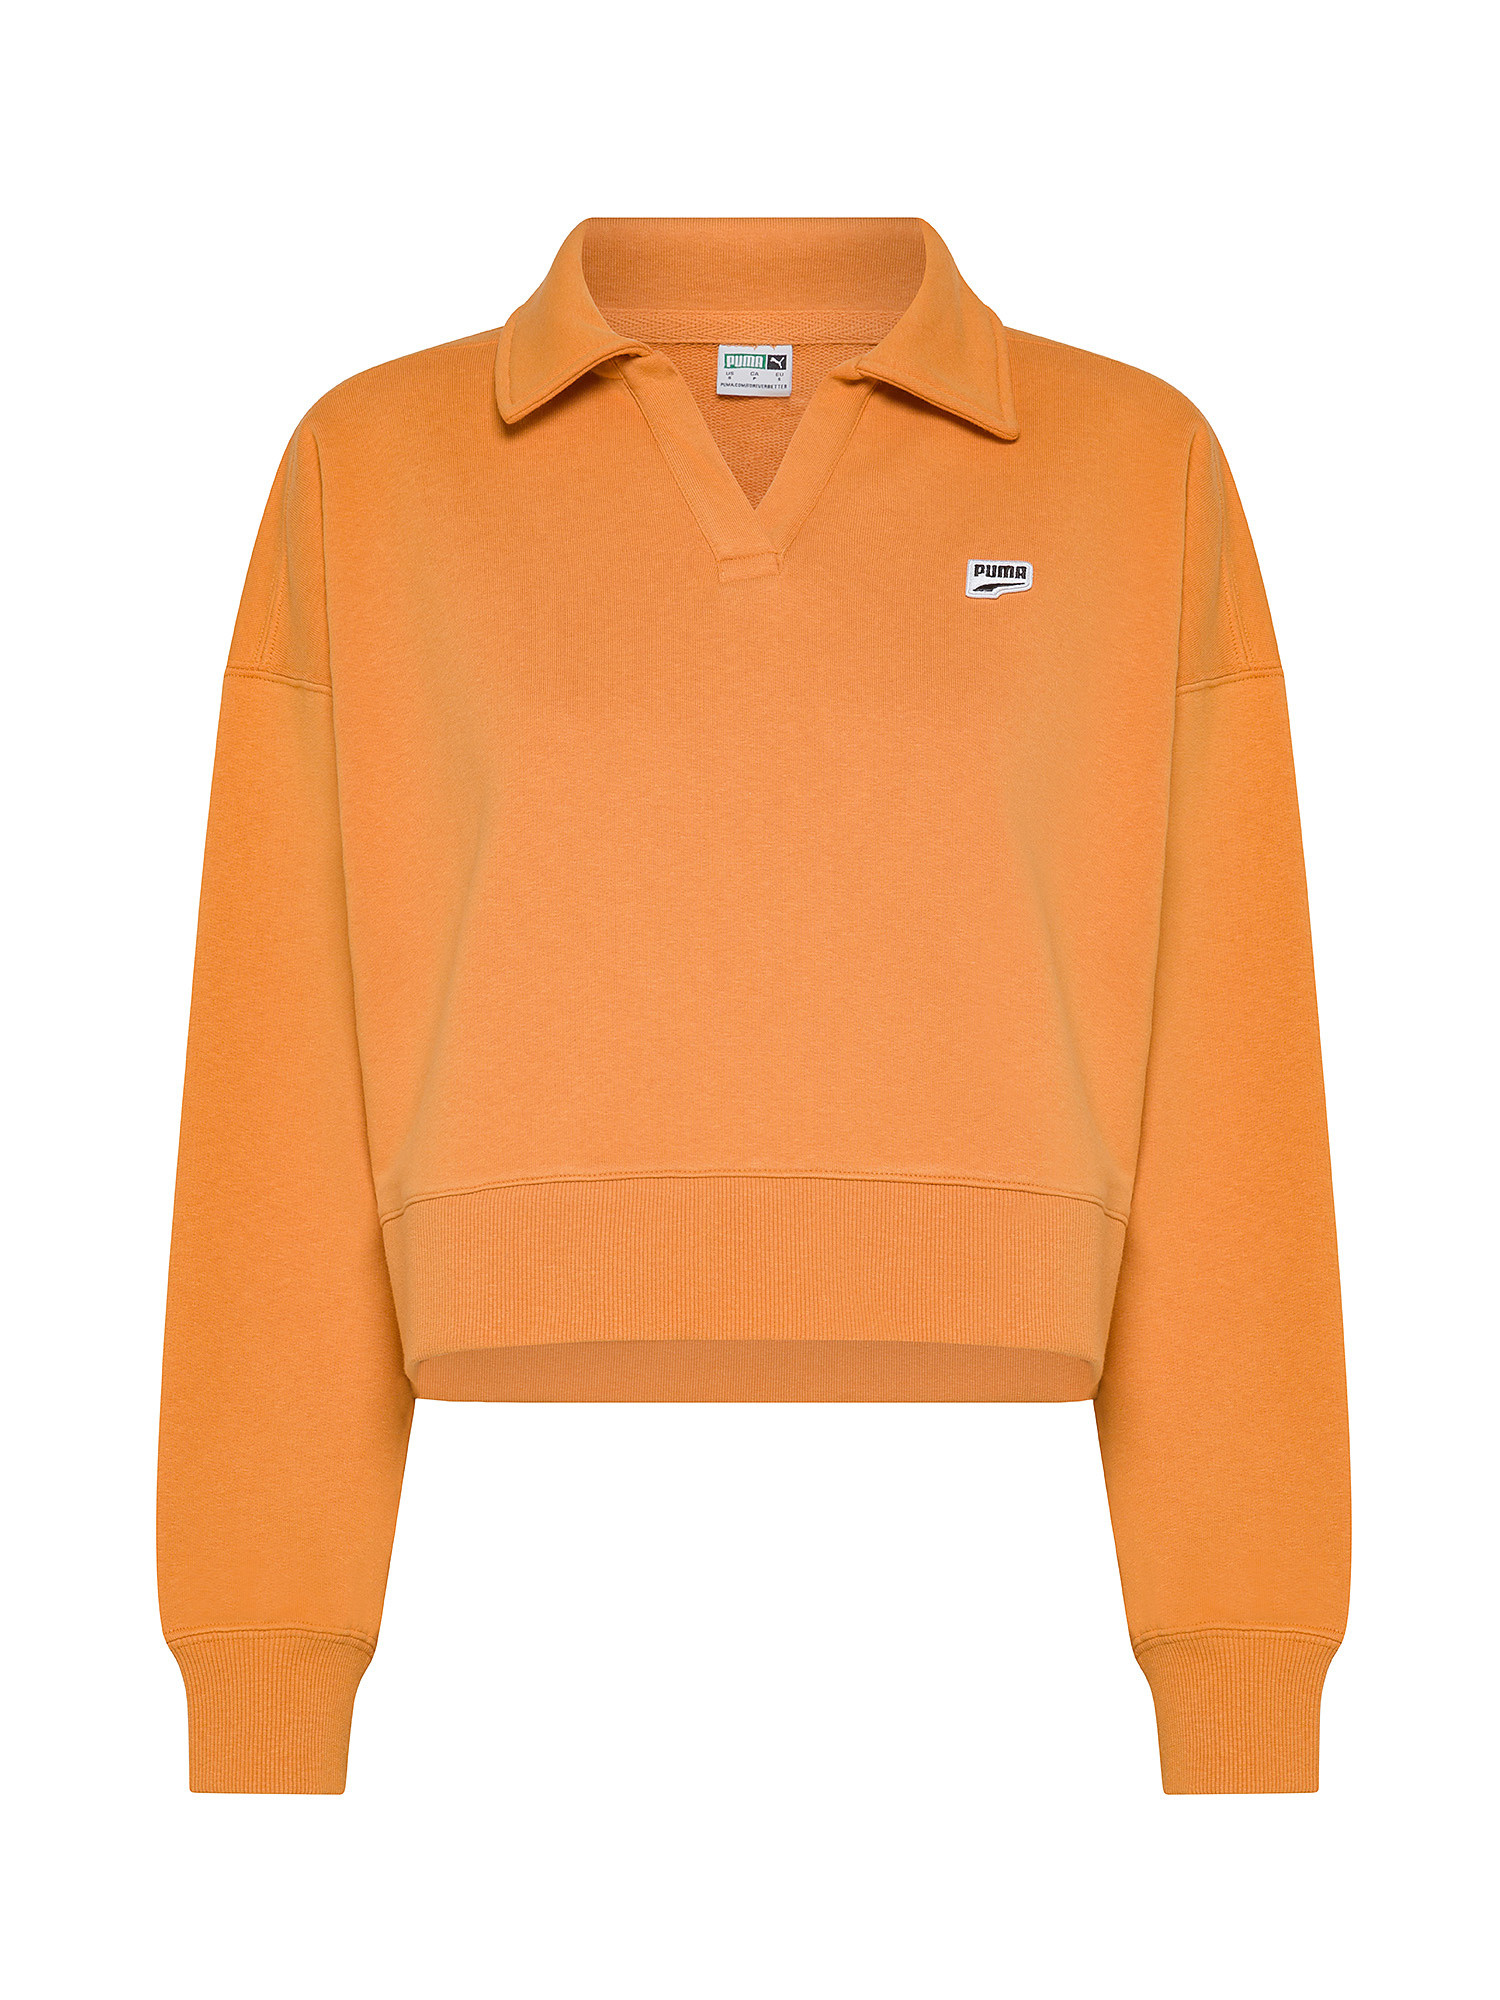 Puma - Oversized polo-style cotton sweatshirt, Sunflower Yellow, large image number 0